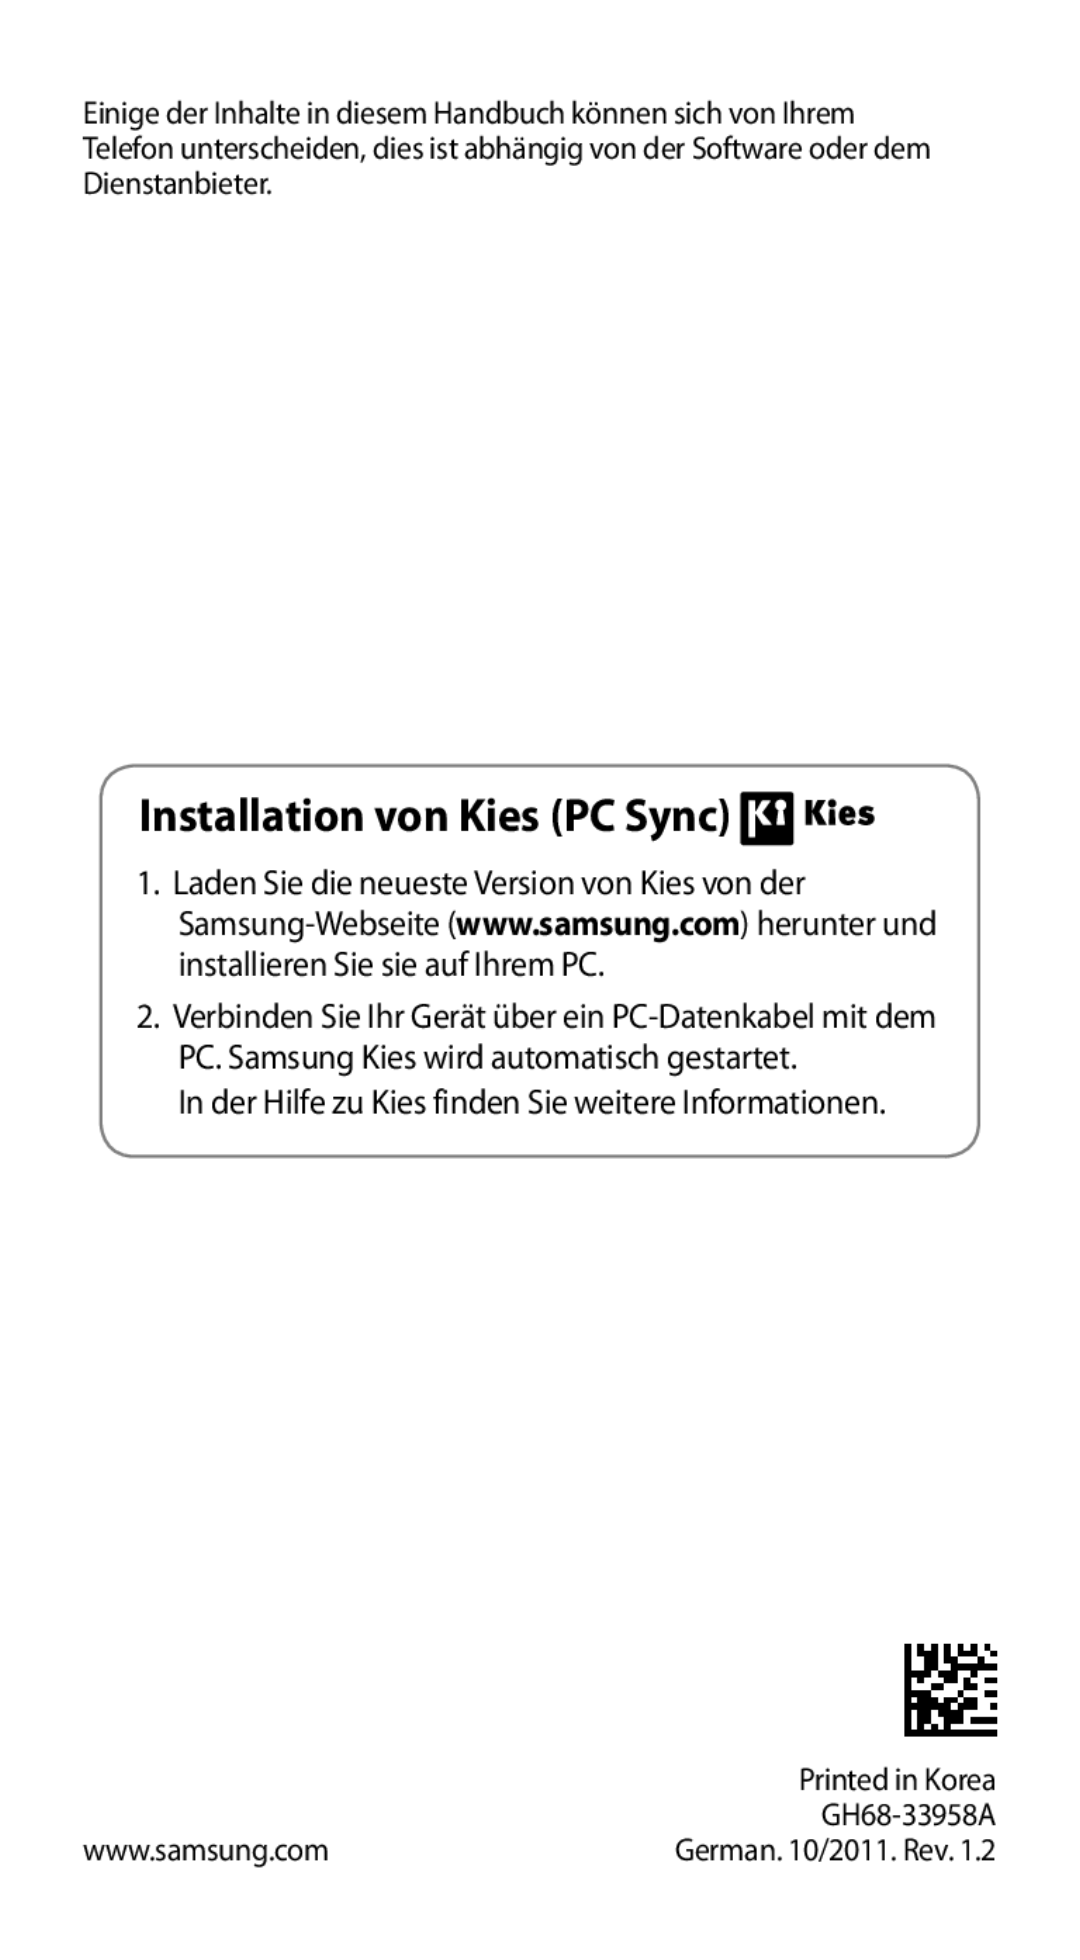 Samsung GT-I9100LKAEUR manual Installation von Kies PC Sync, In der Hilfe zu Kies finden Sie weitere Informationen 